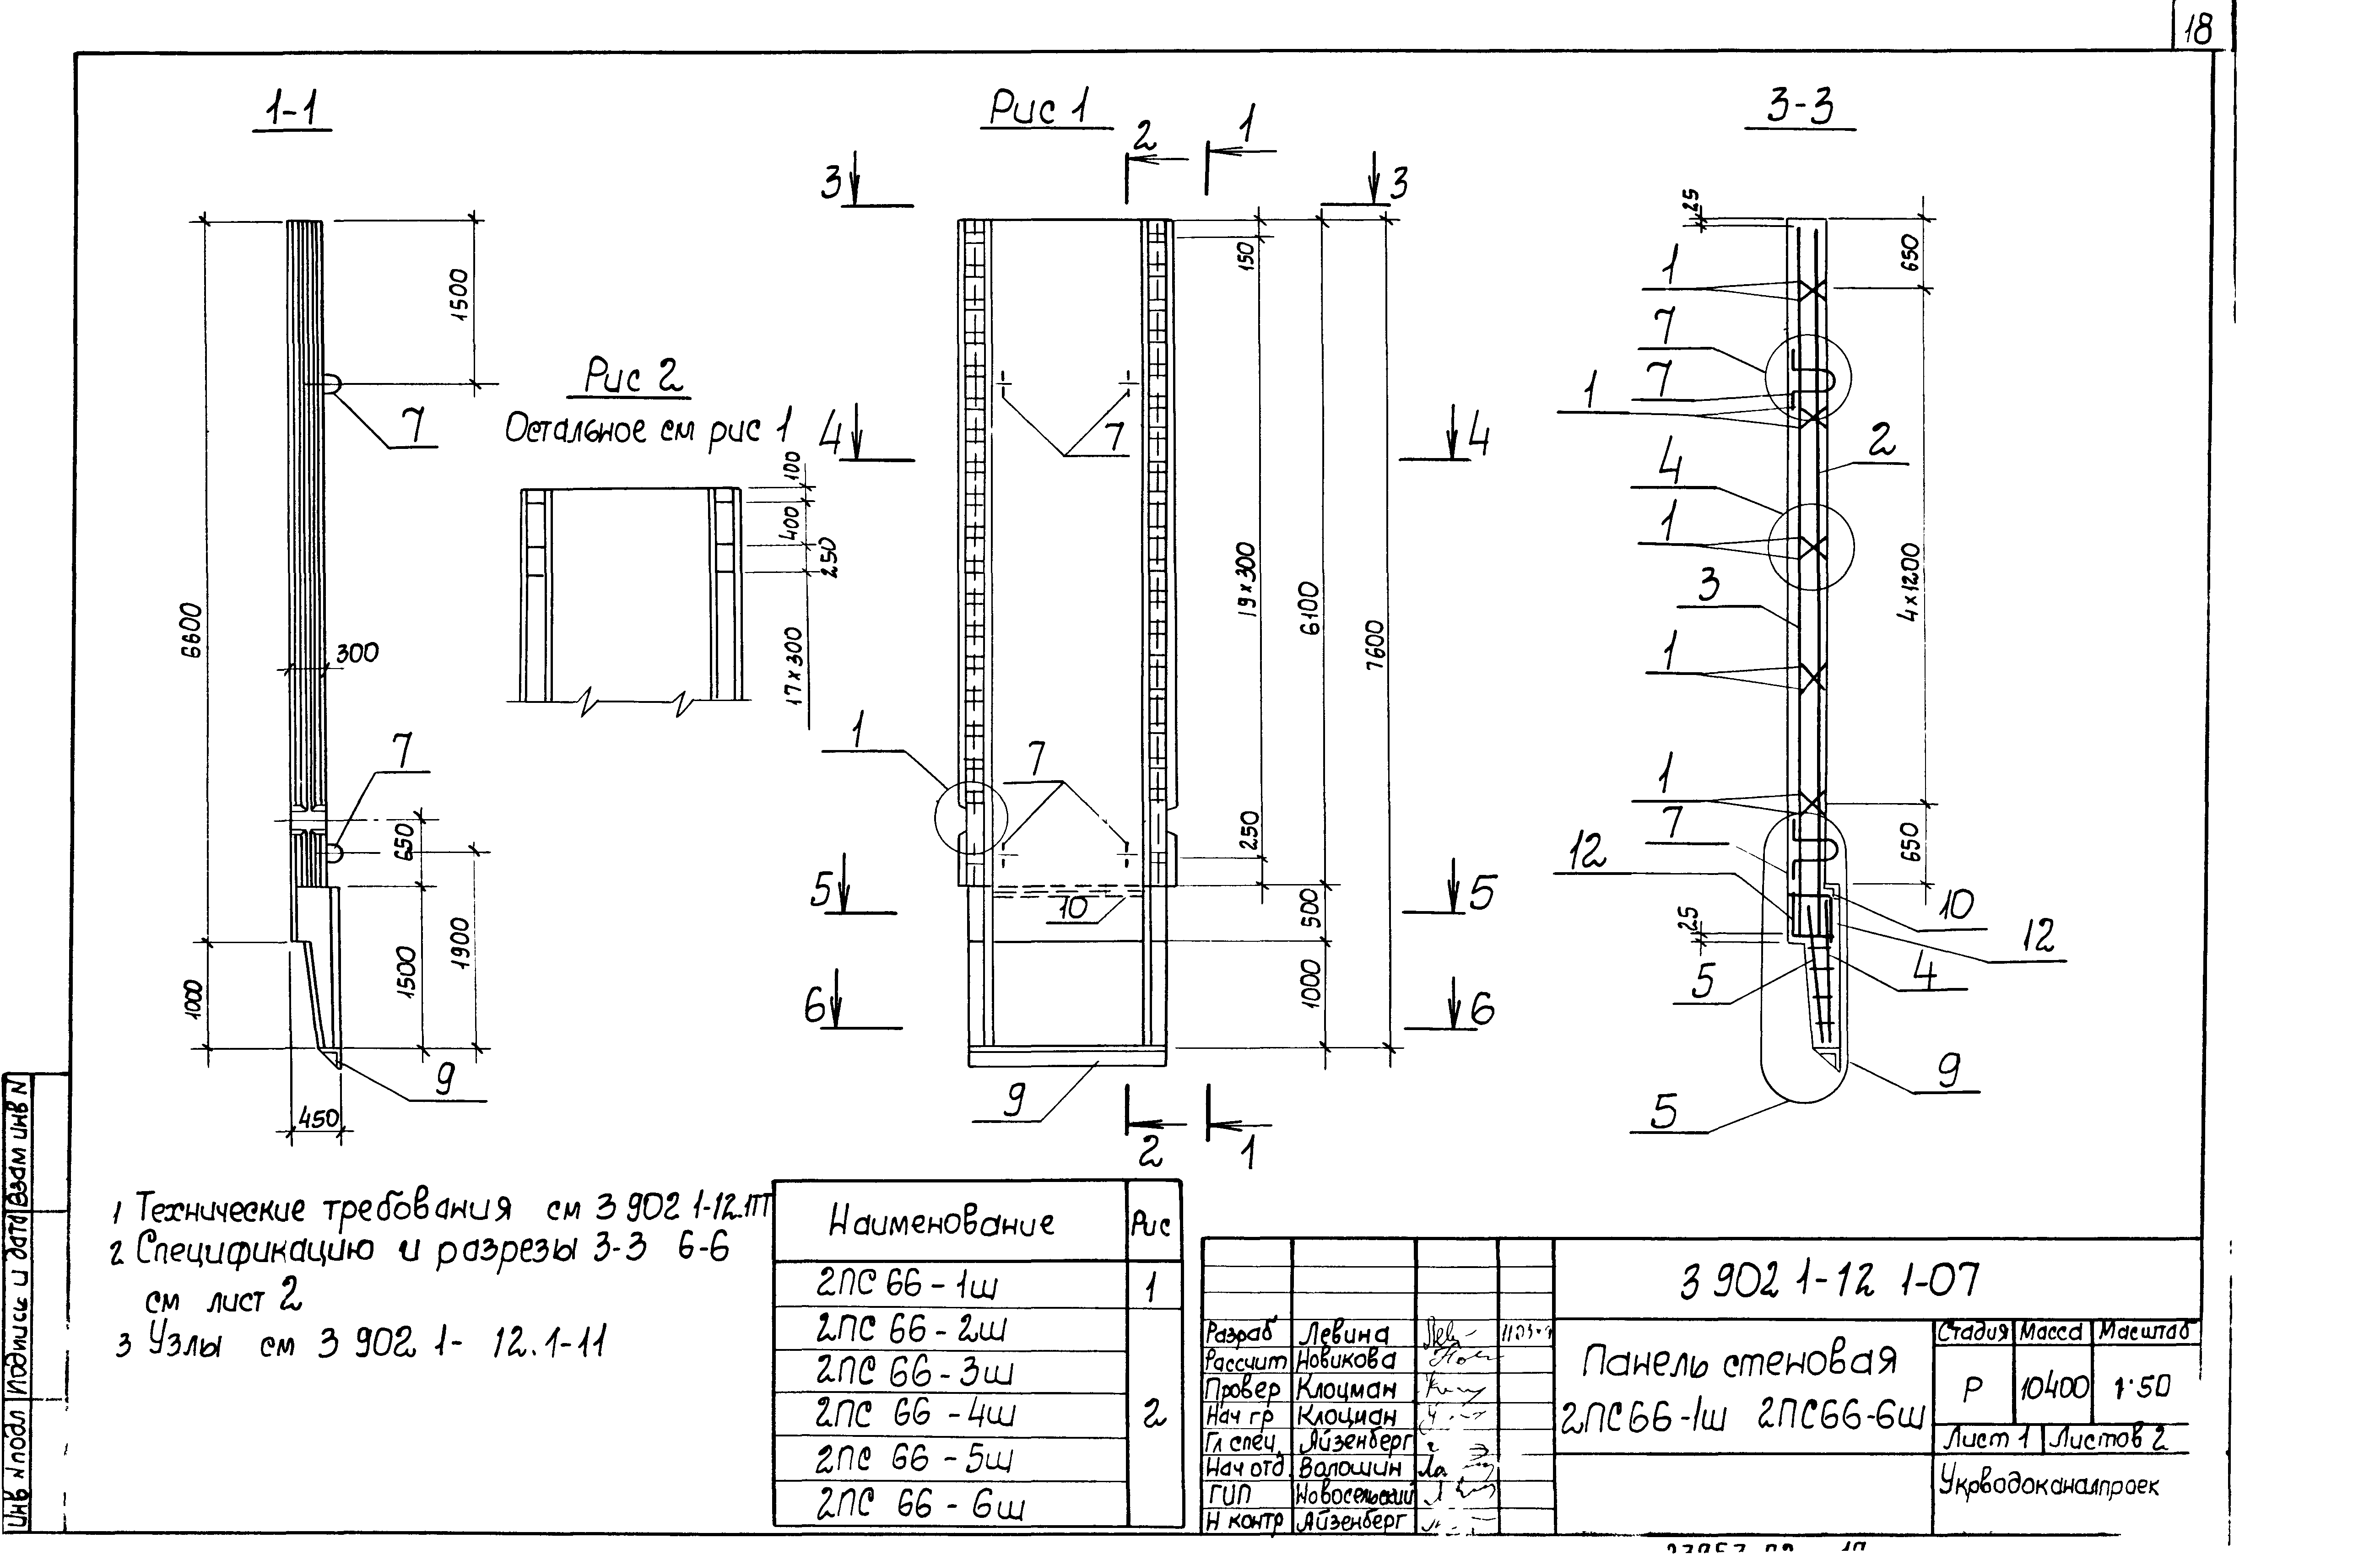 Панель стеновая 2ПС66-5ш Серия 3.902.1-12, вып.1